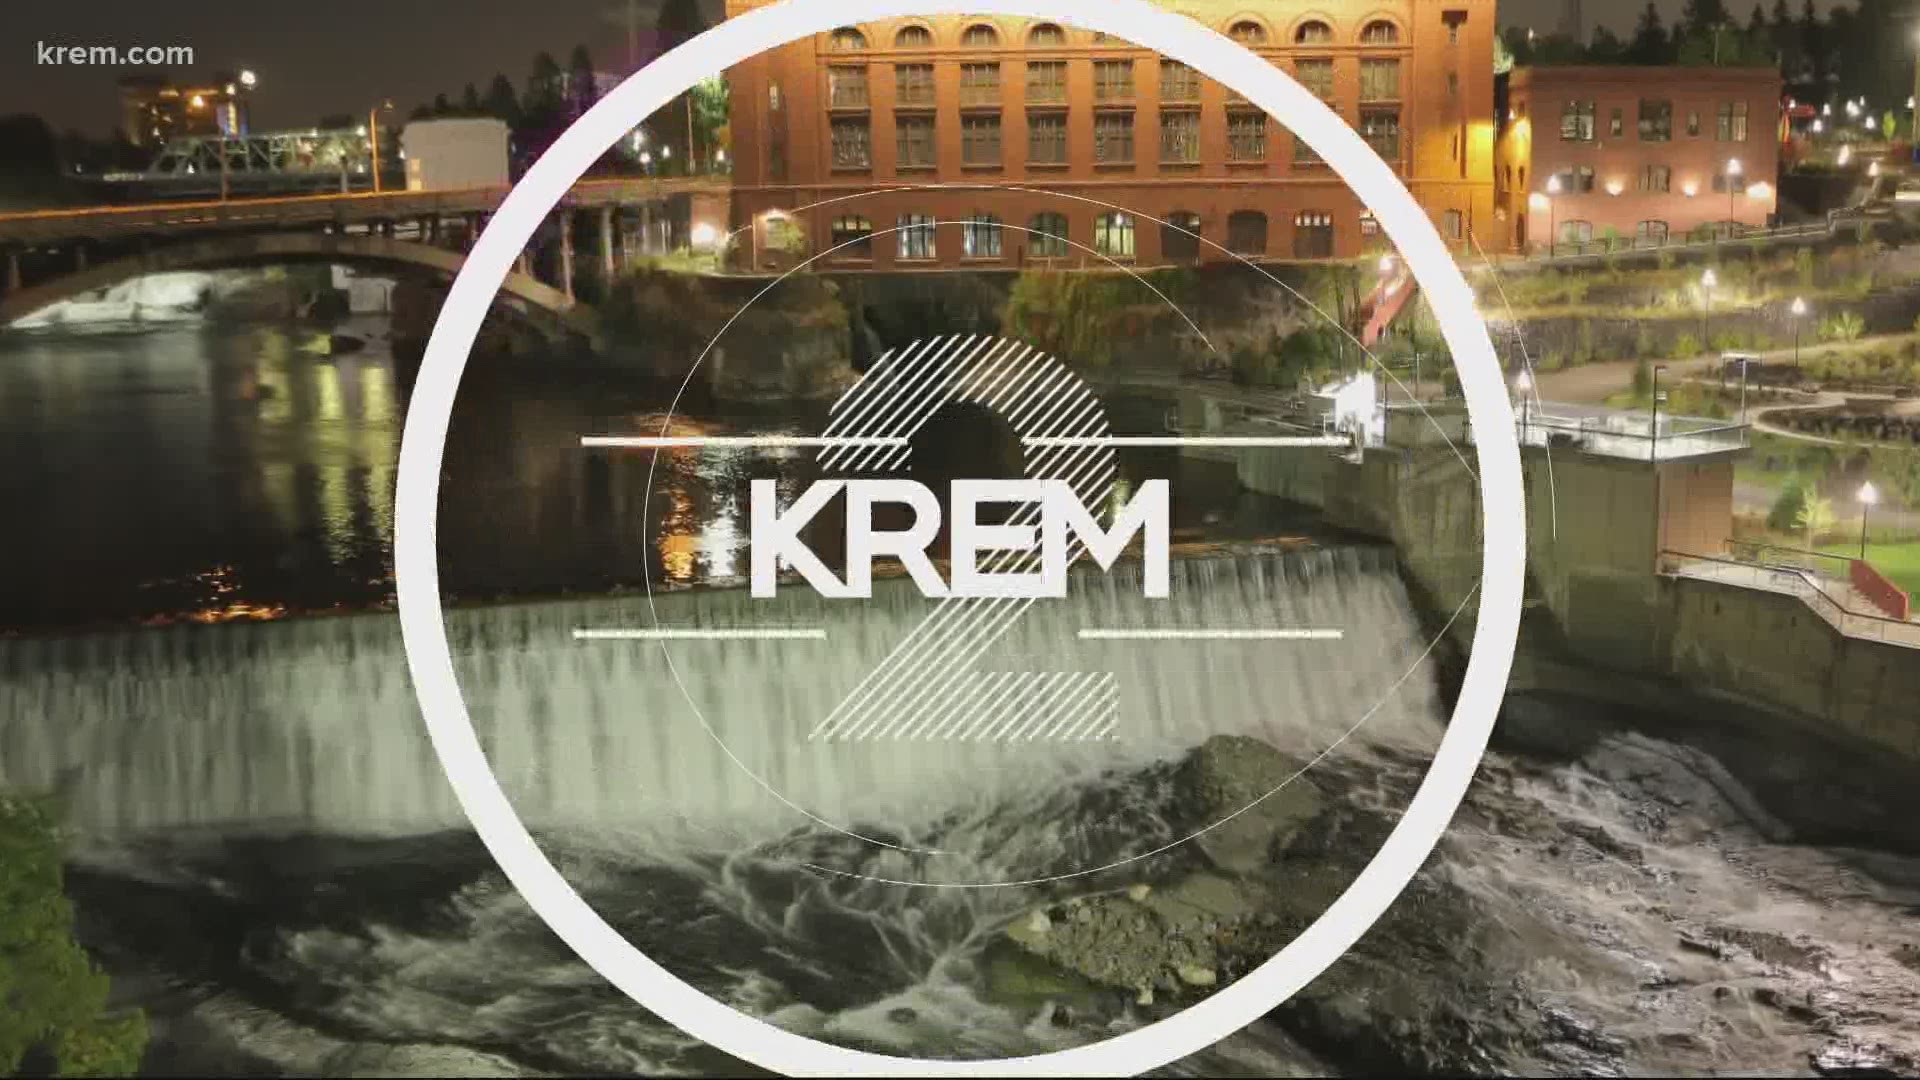 KREM 2 News at 11 on May 6, 2021